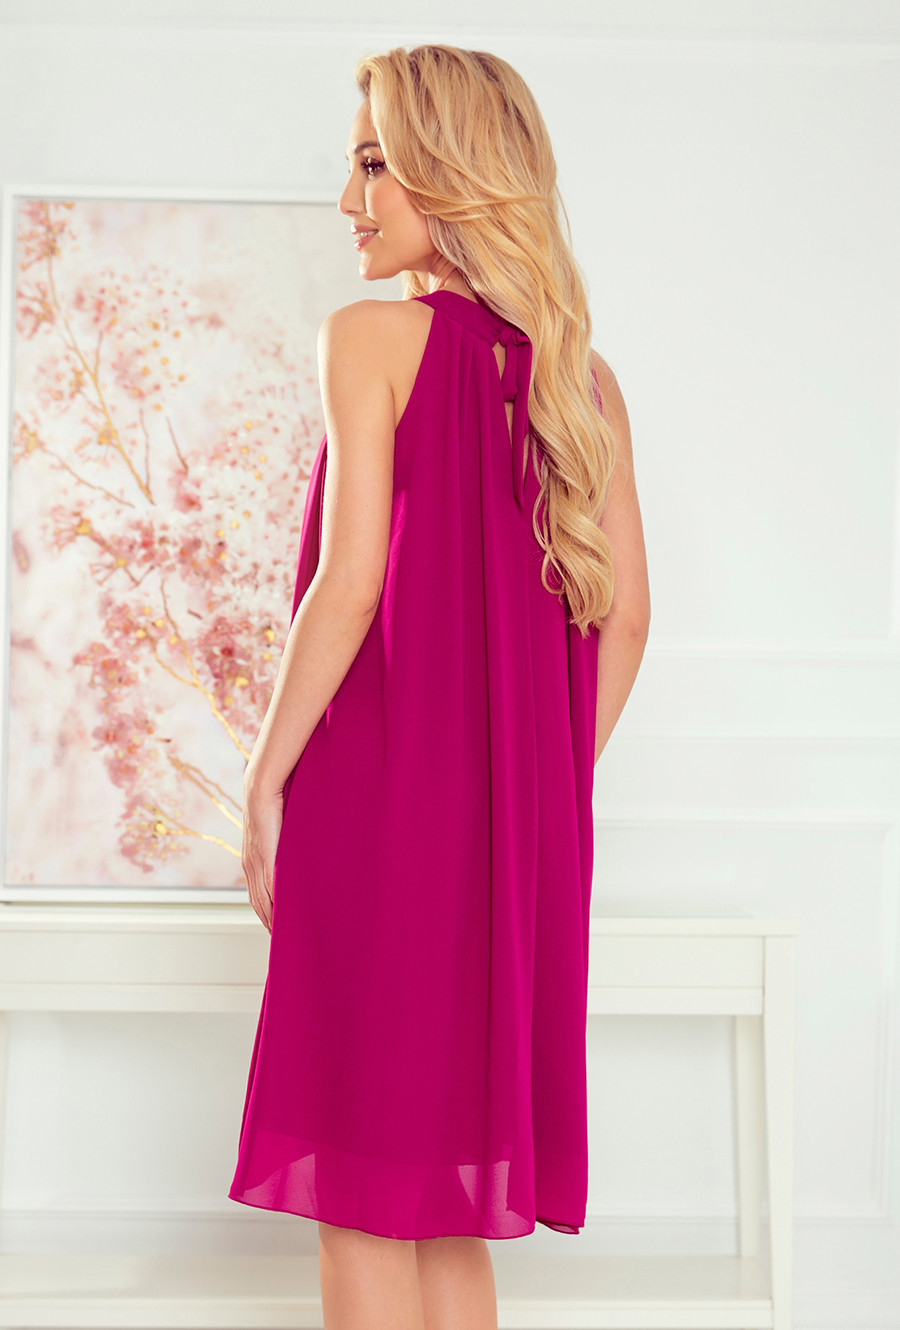 ALIZEE - Dámské šifonové šaty ve fuchsiové barvě se zavazováním 350-7 XL